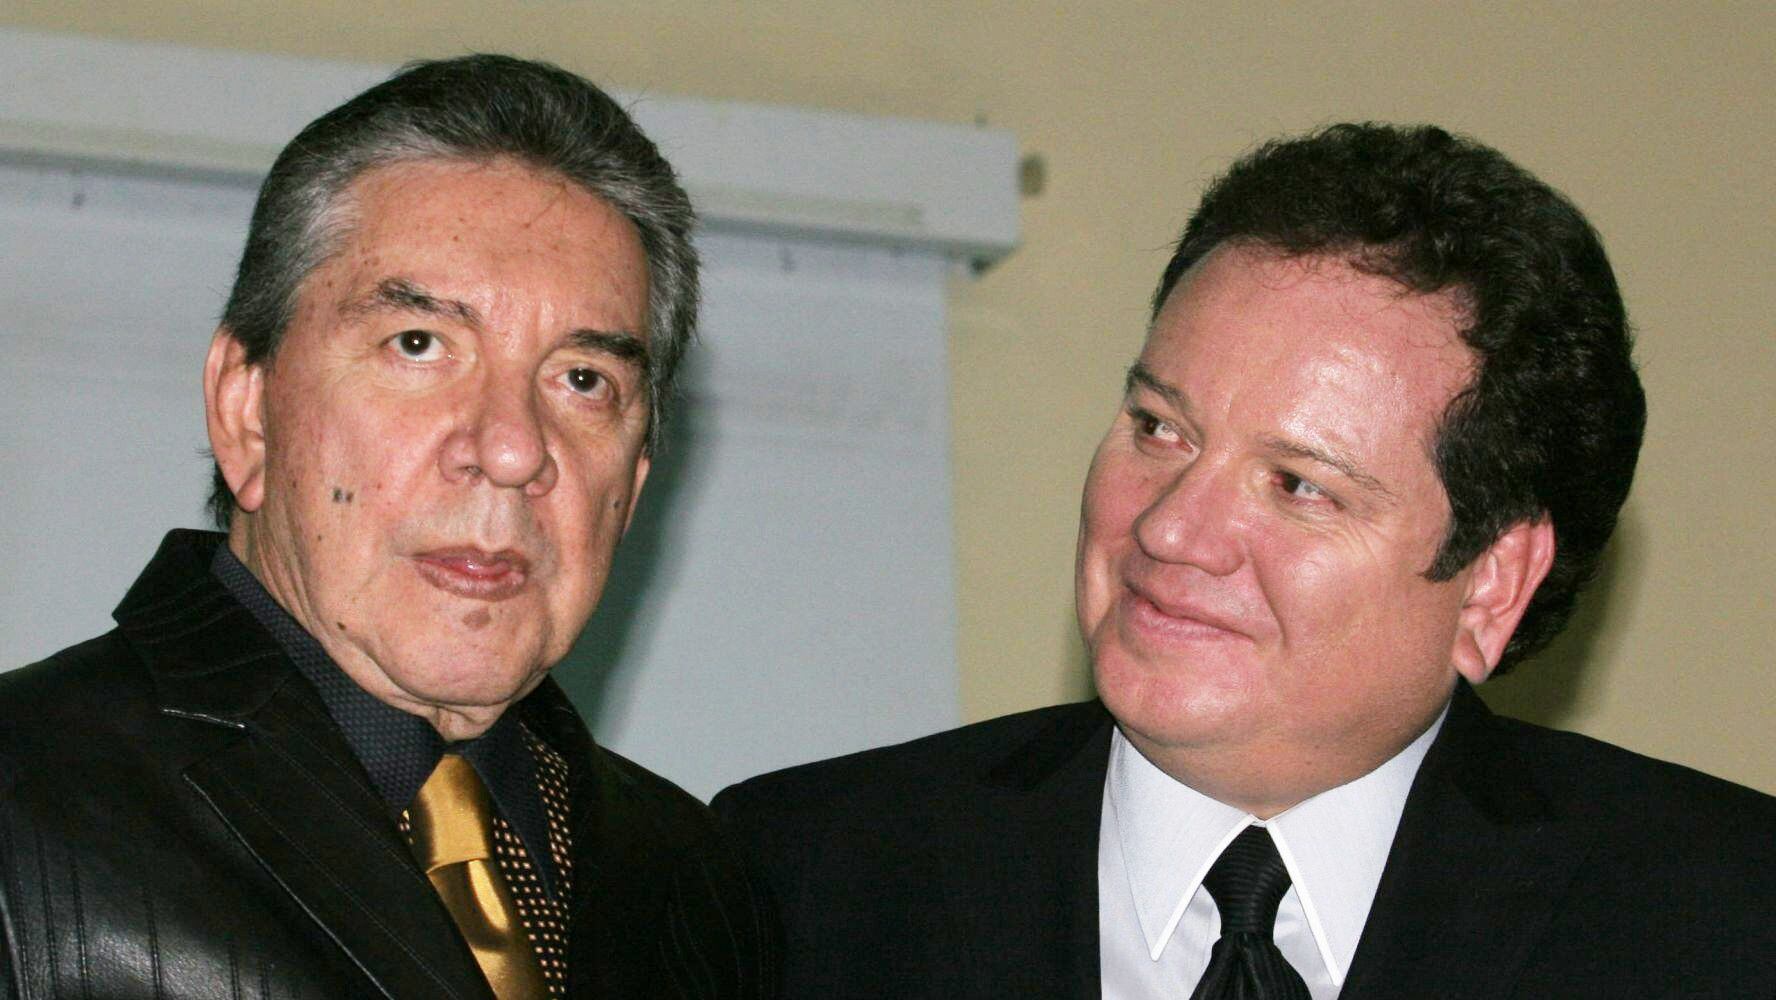 Fallece hijo de Marco Antonio Muñíz, informa su hermano ‘Coque’ Muñíz; ‘Será difícil este momento’